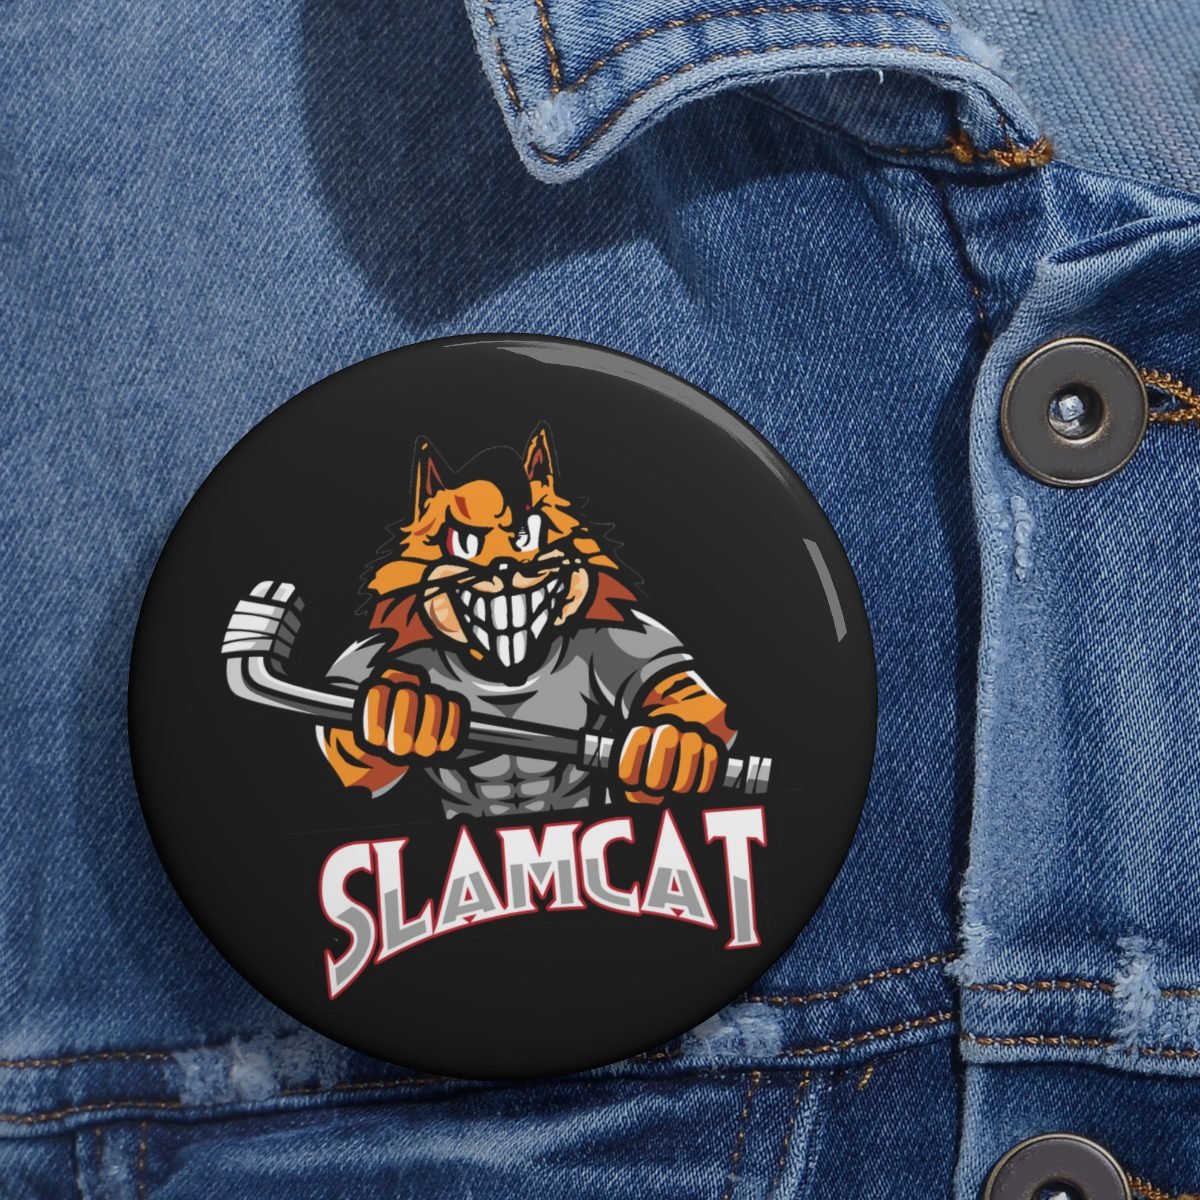 Slamcat Pin Buttons